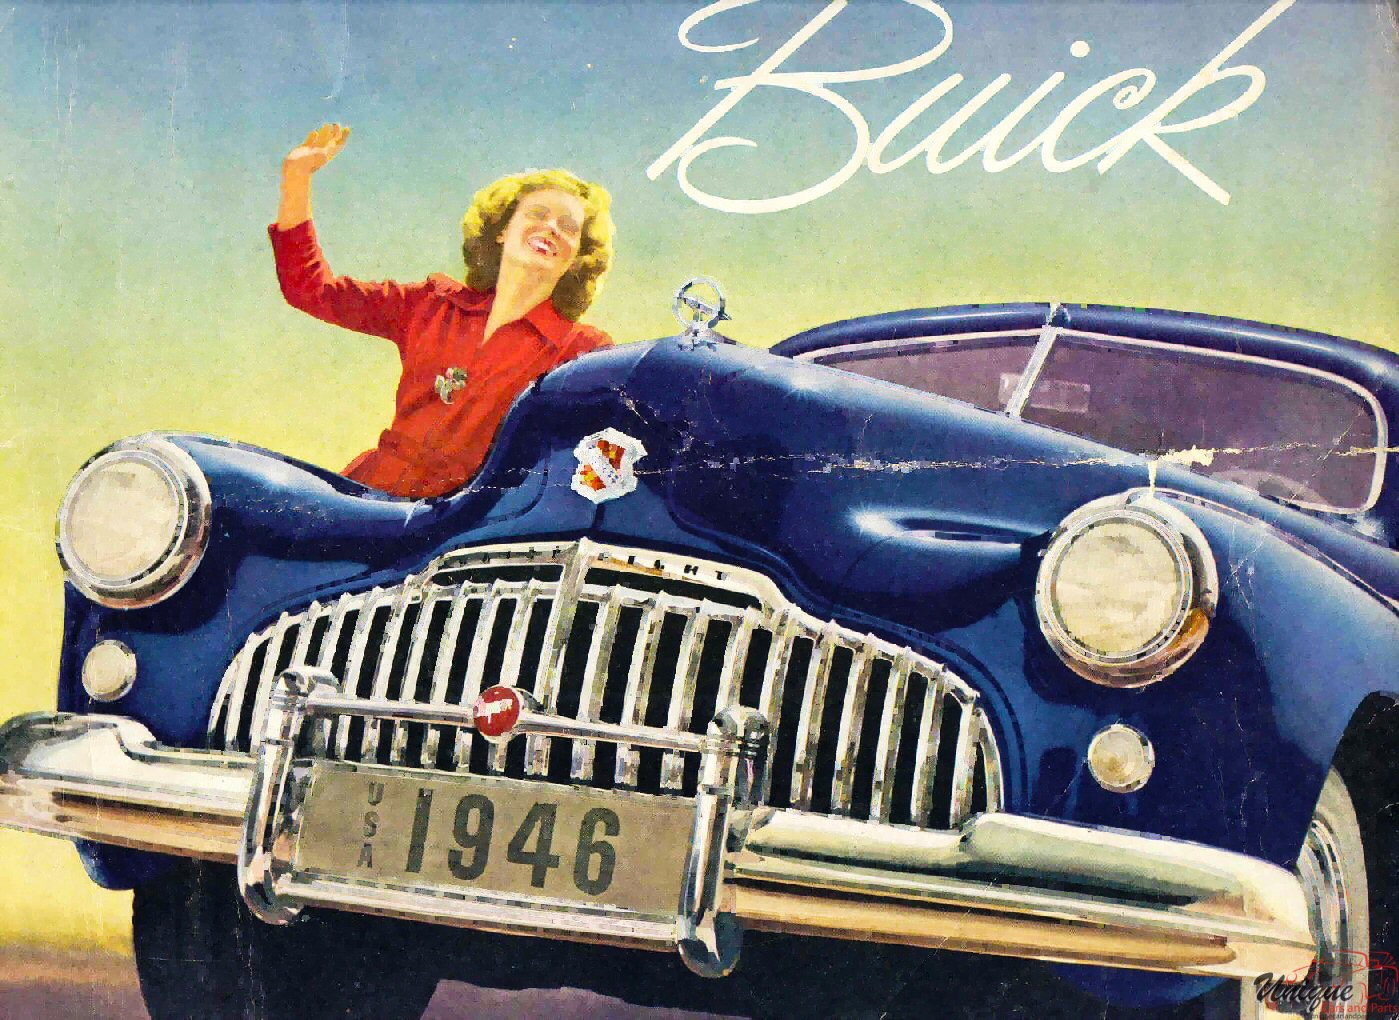 1946 Buick Brochure